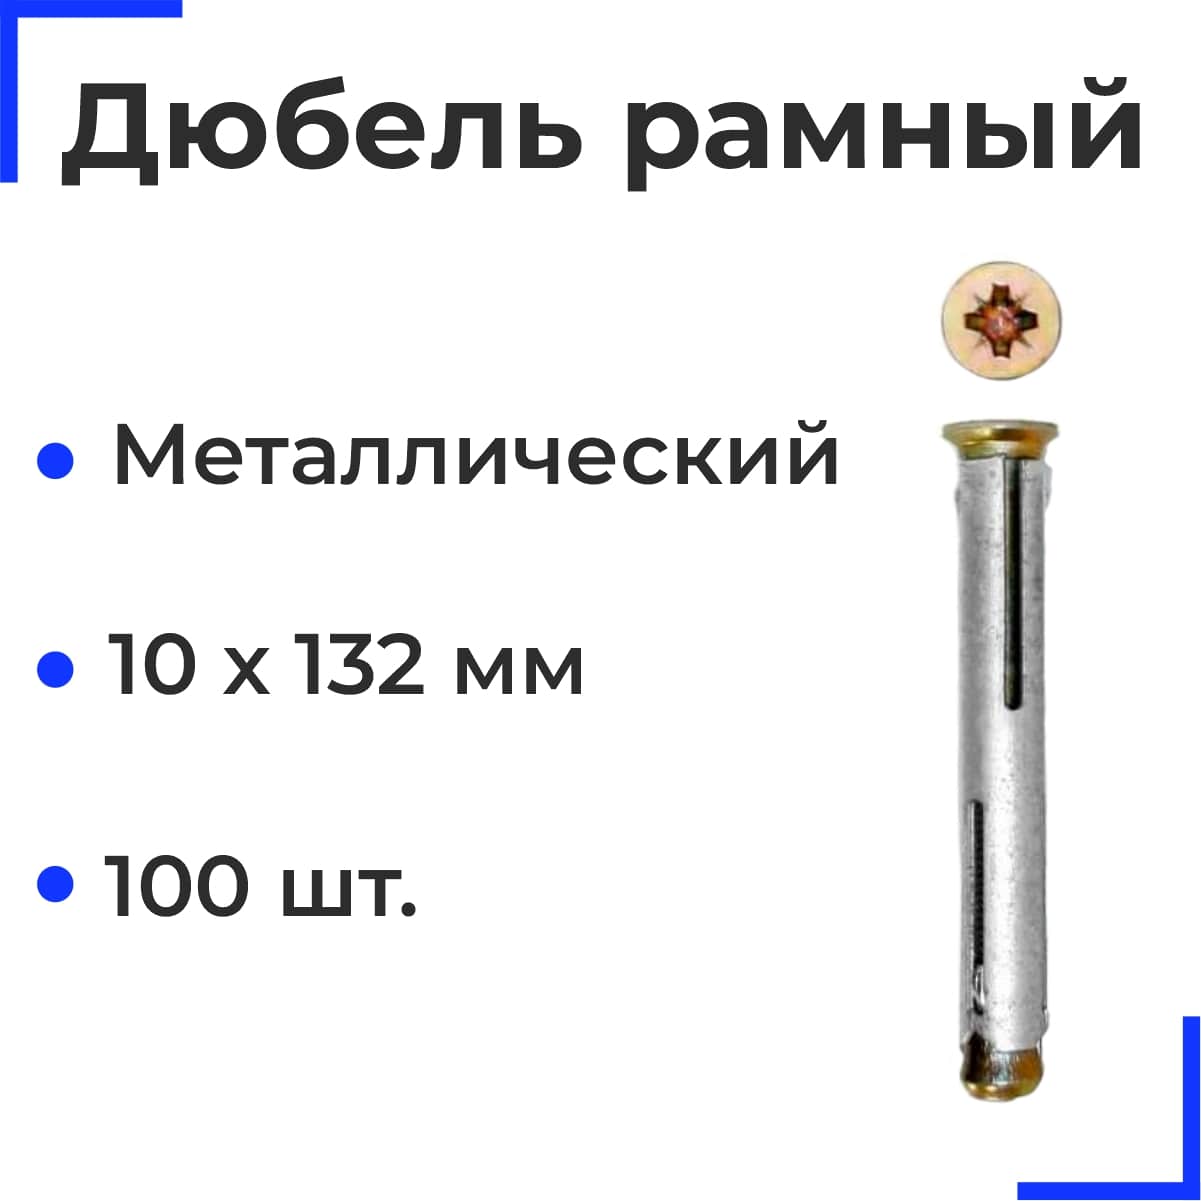 Металлический рамный дюбель 10х132 (100 шт)